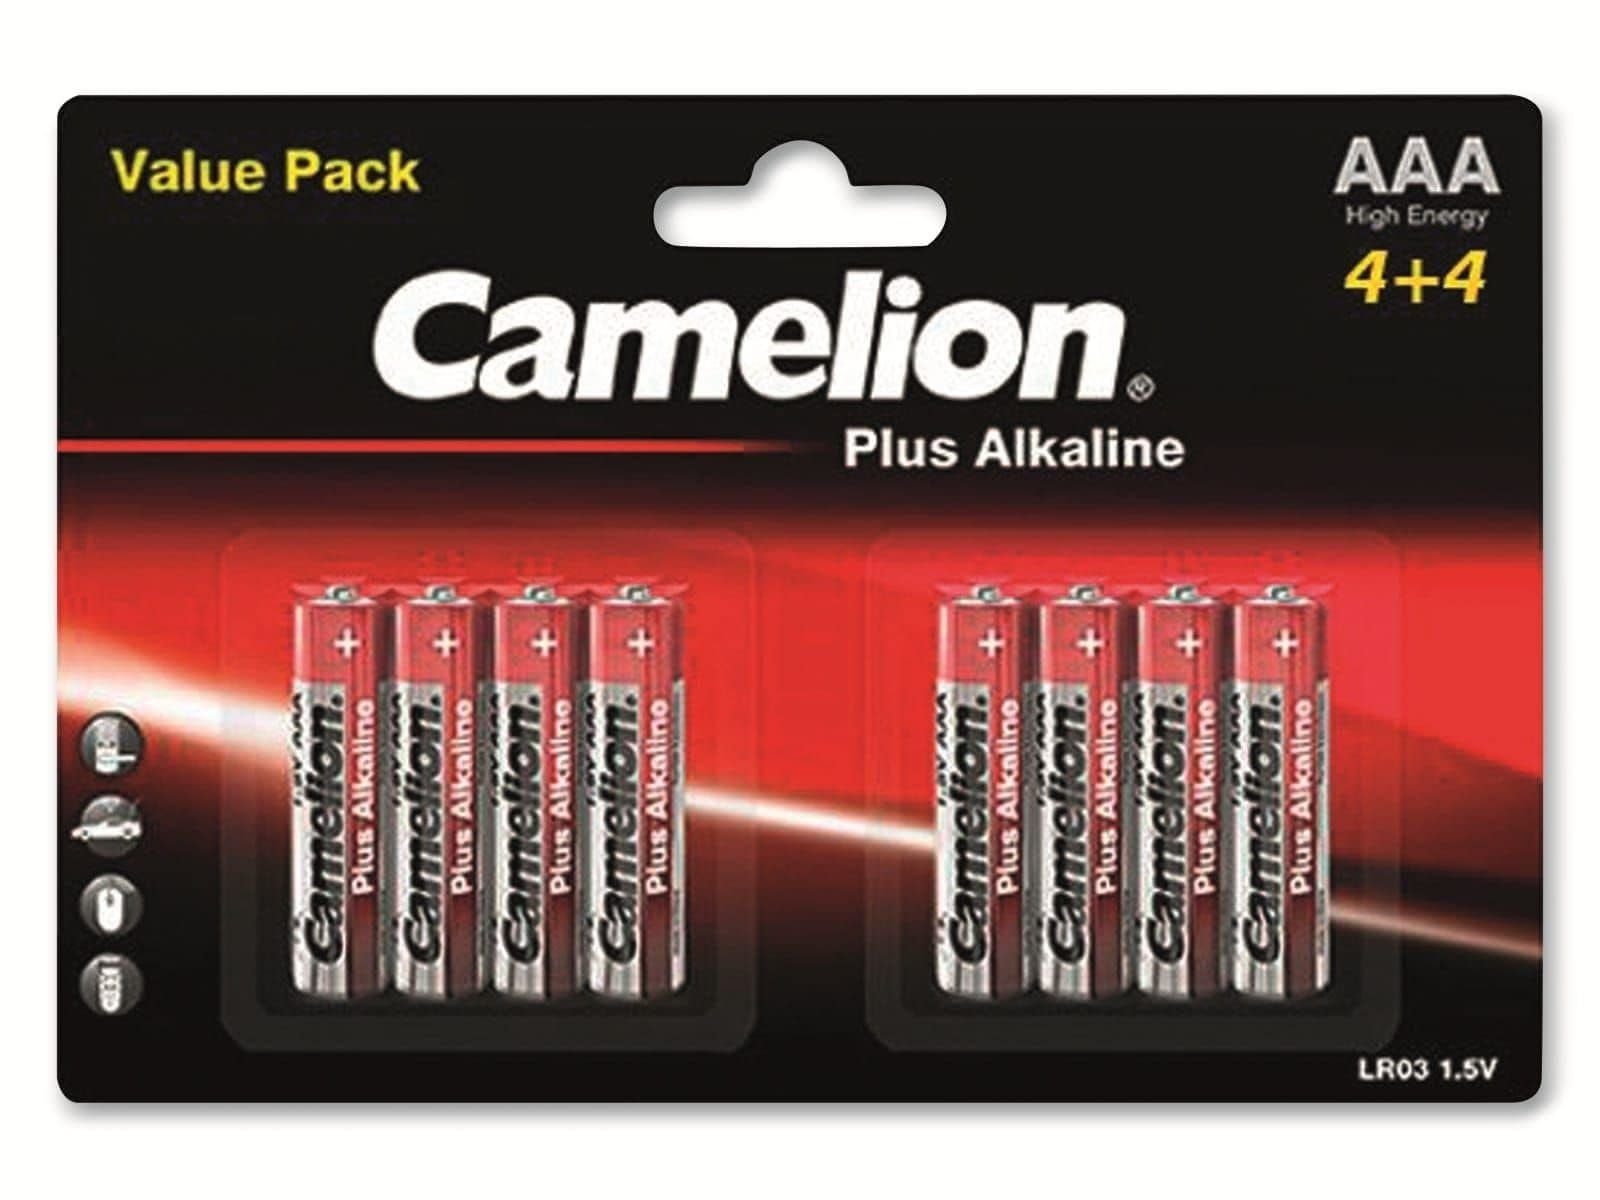 CAMELION Camelion Batterie Plus-Alkaline, 8 LR03, Micro-Batterie,